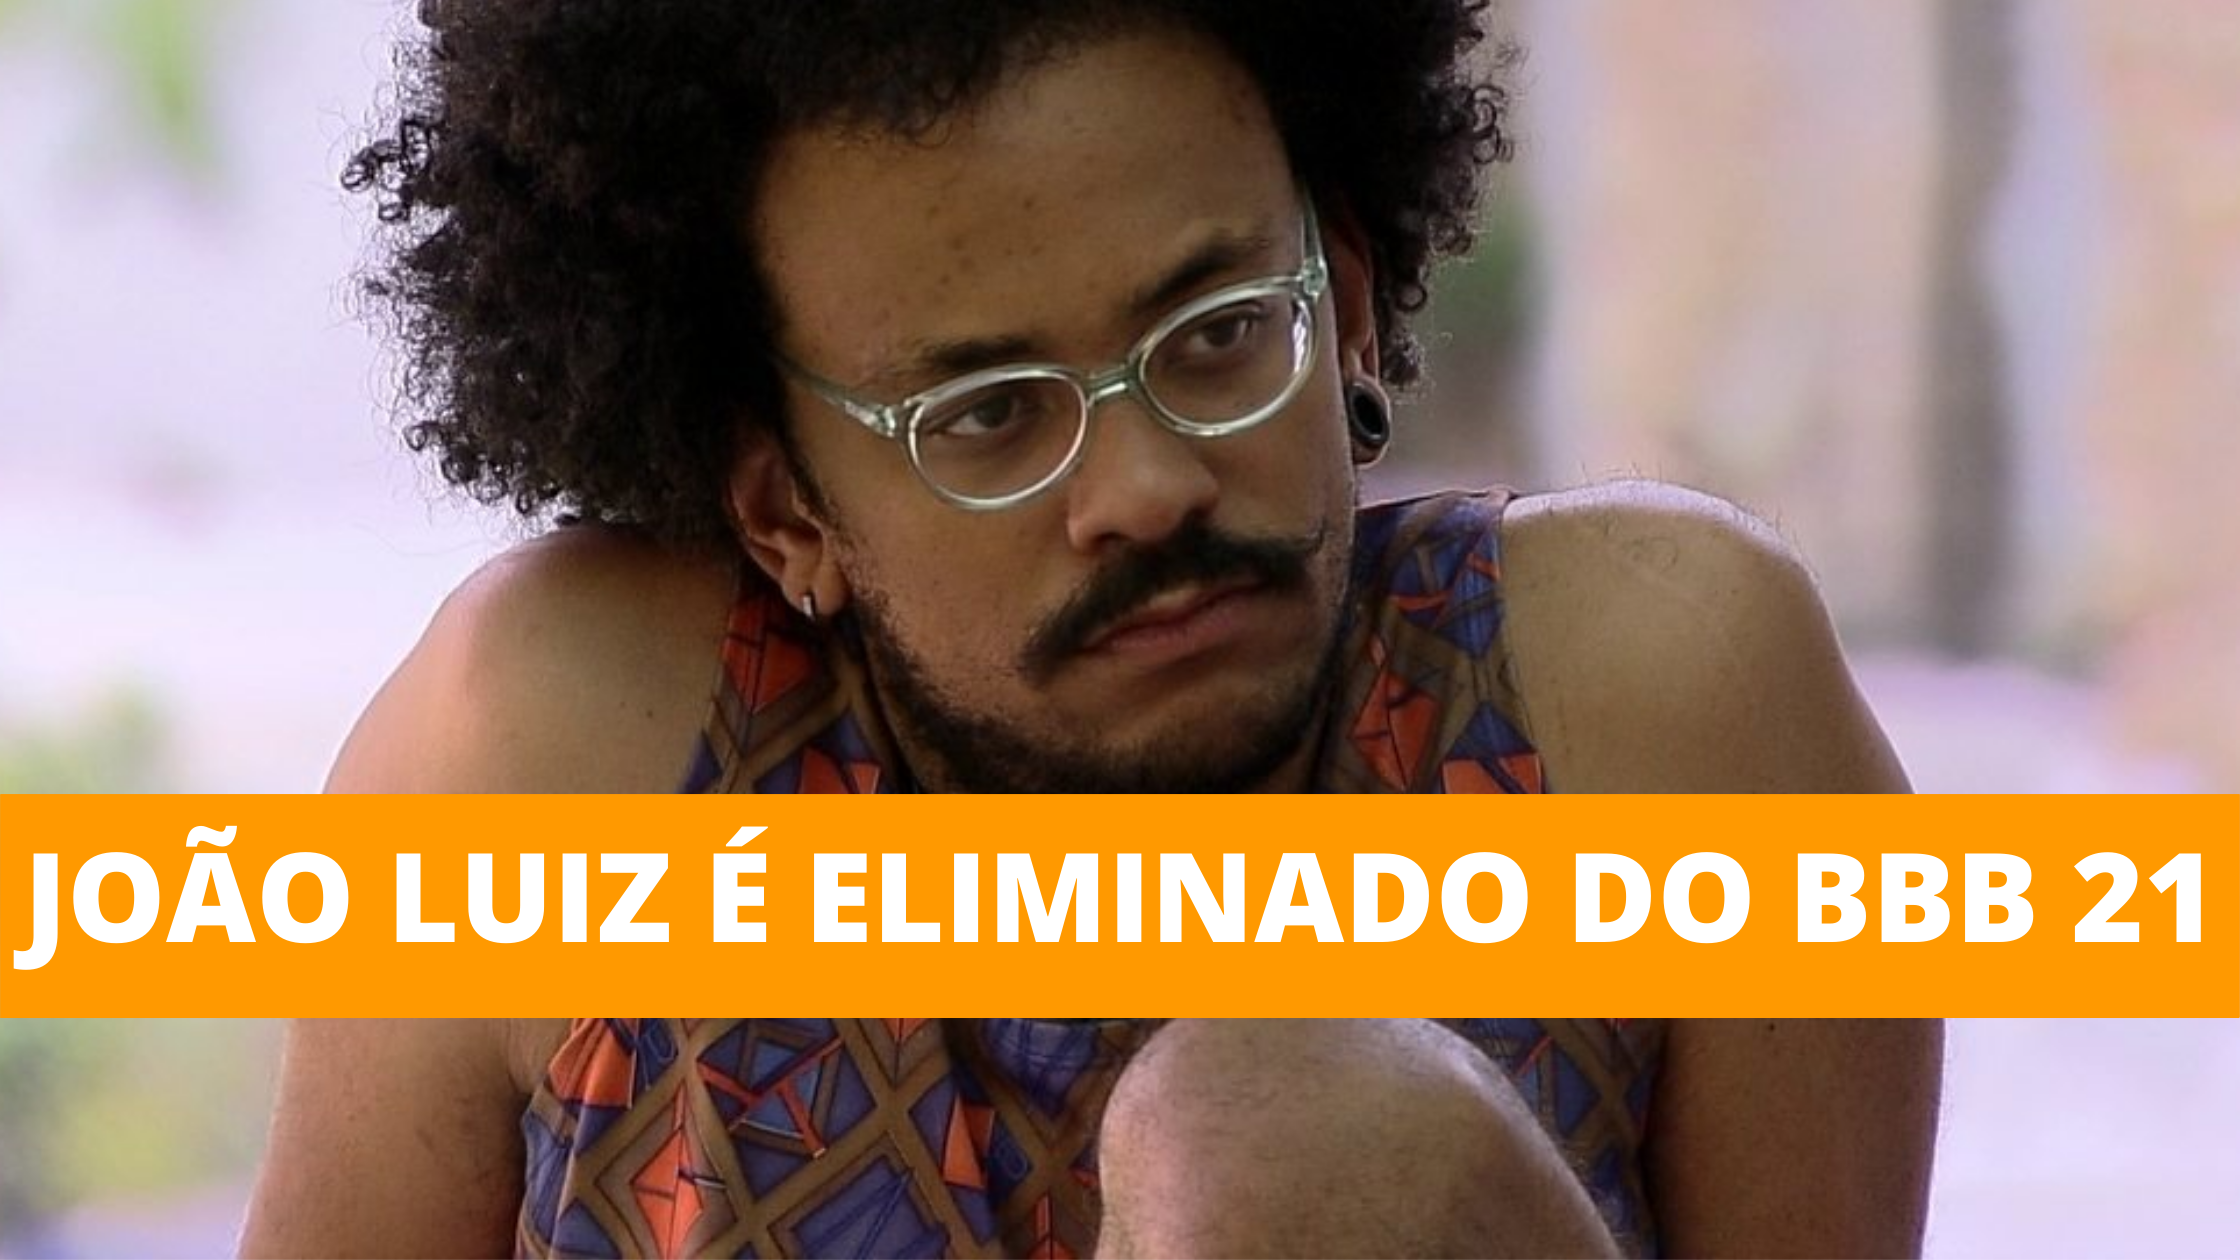 João Luiz é eliminado do BBB 21